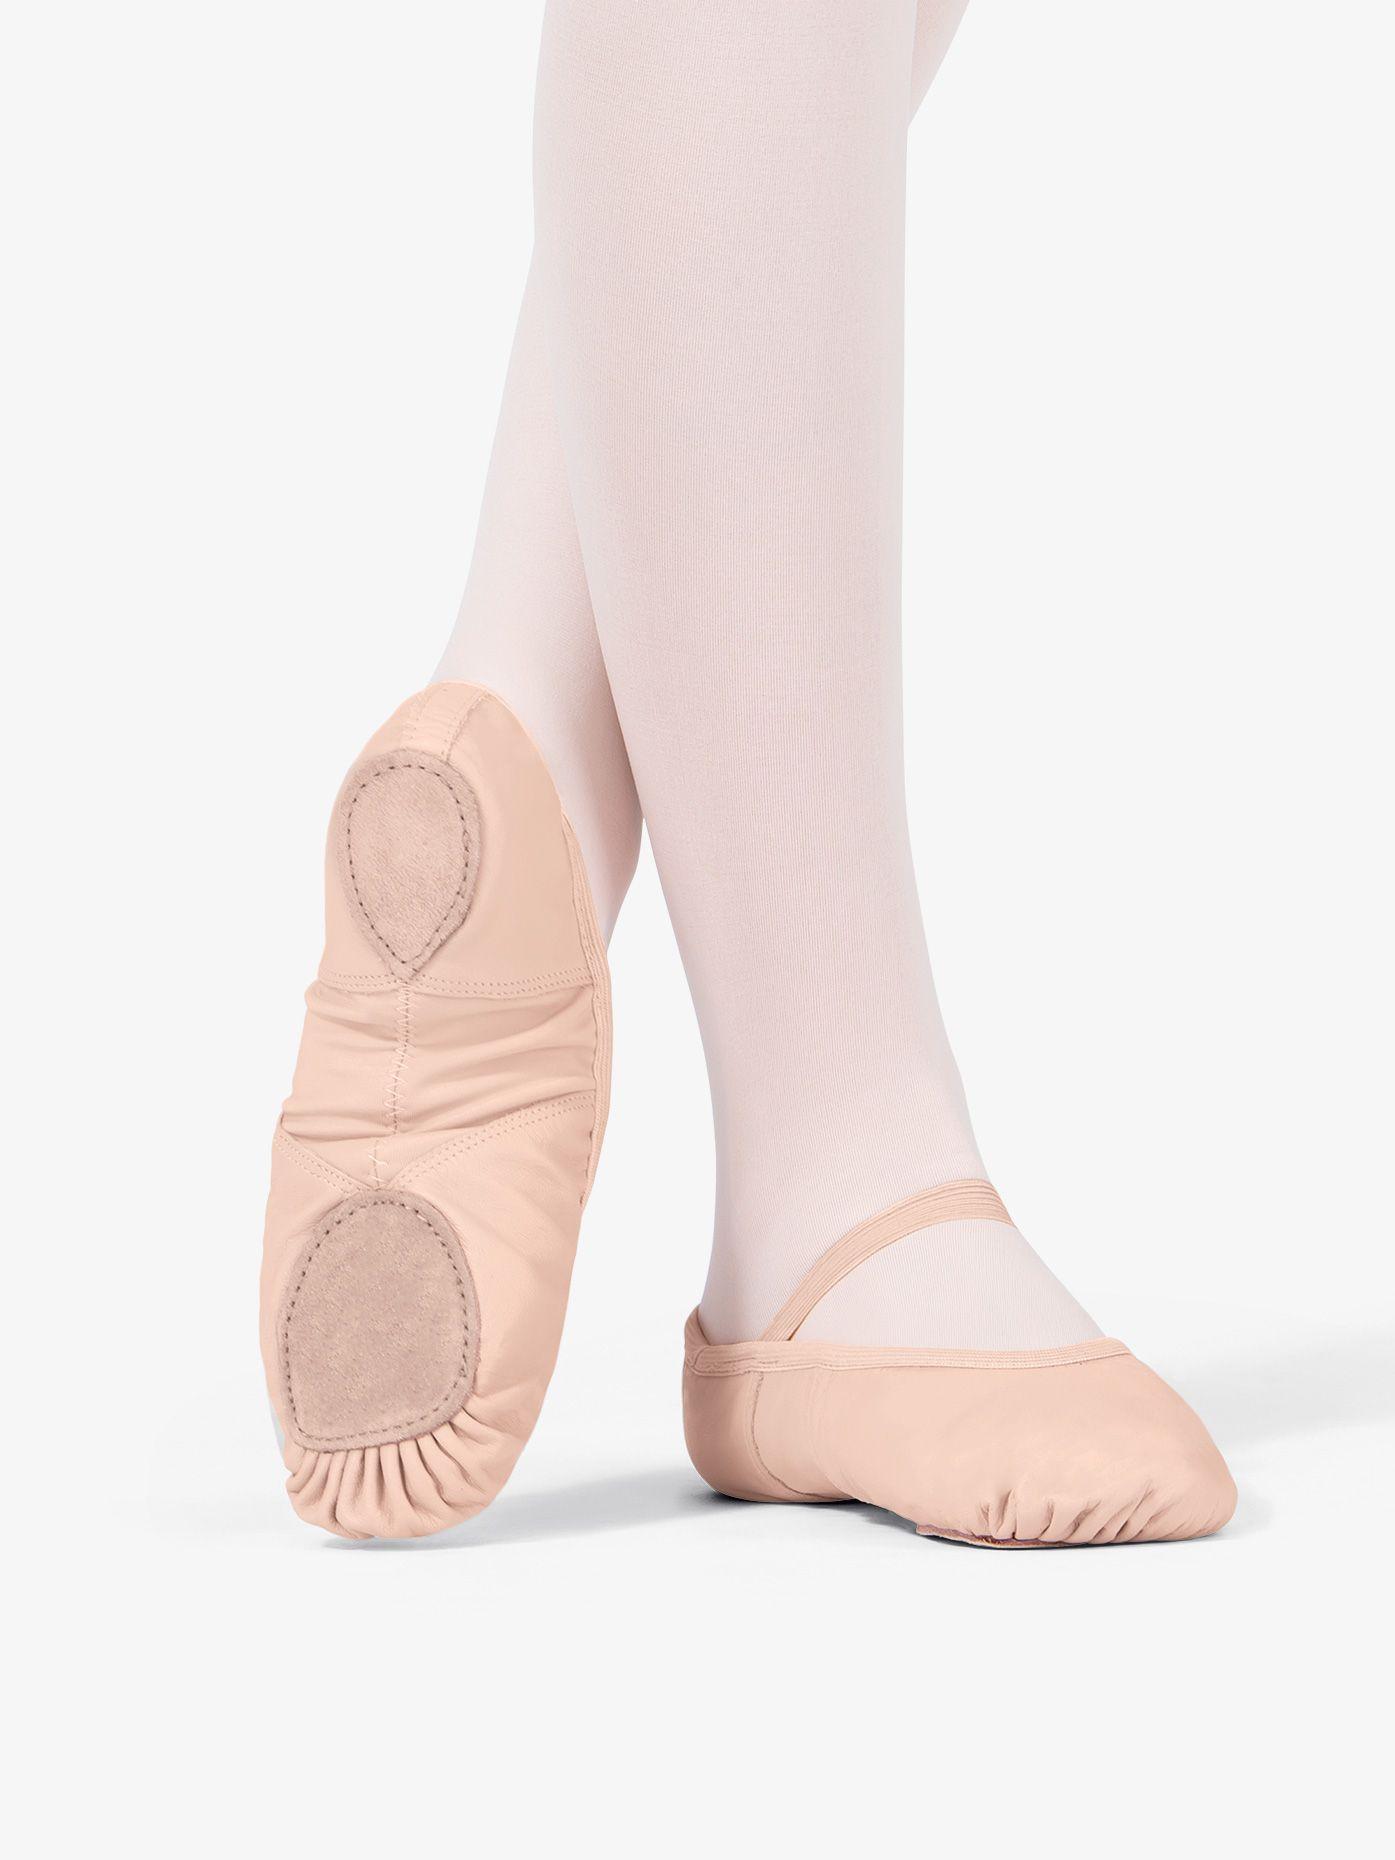 Ballet Slippers Ballet Slippers Background